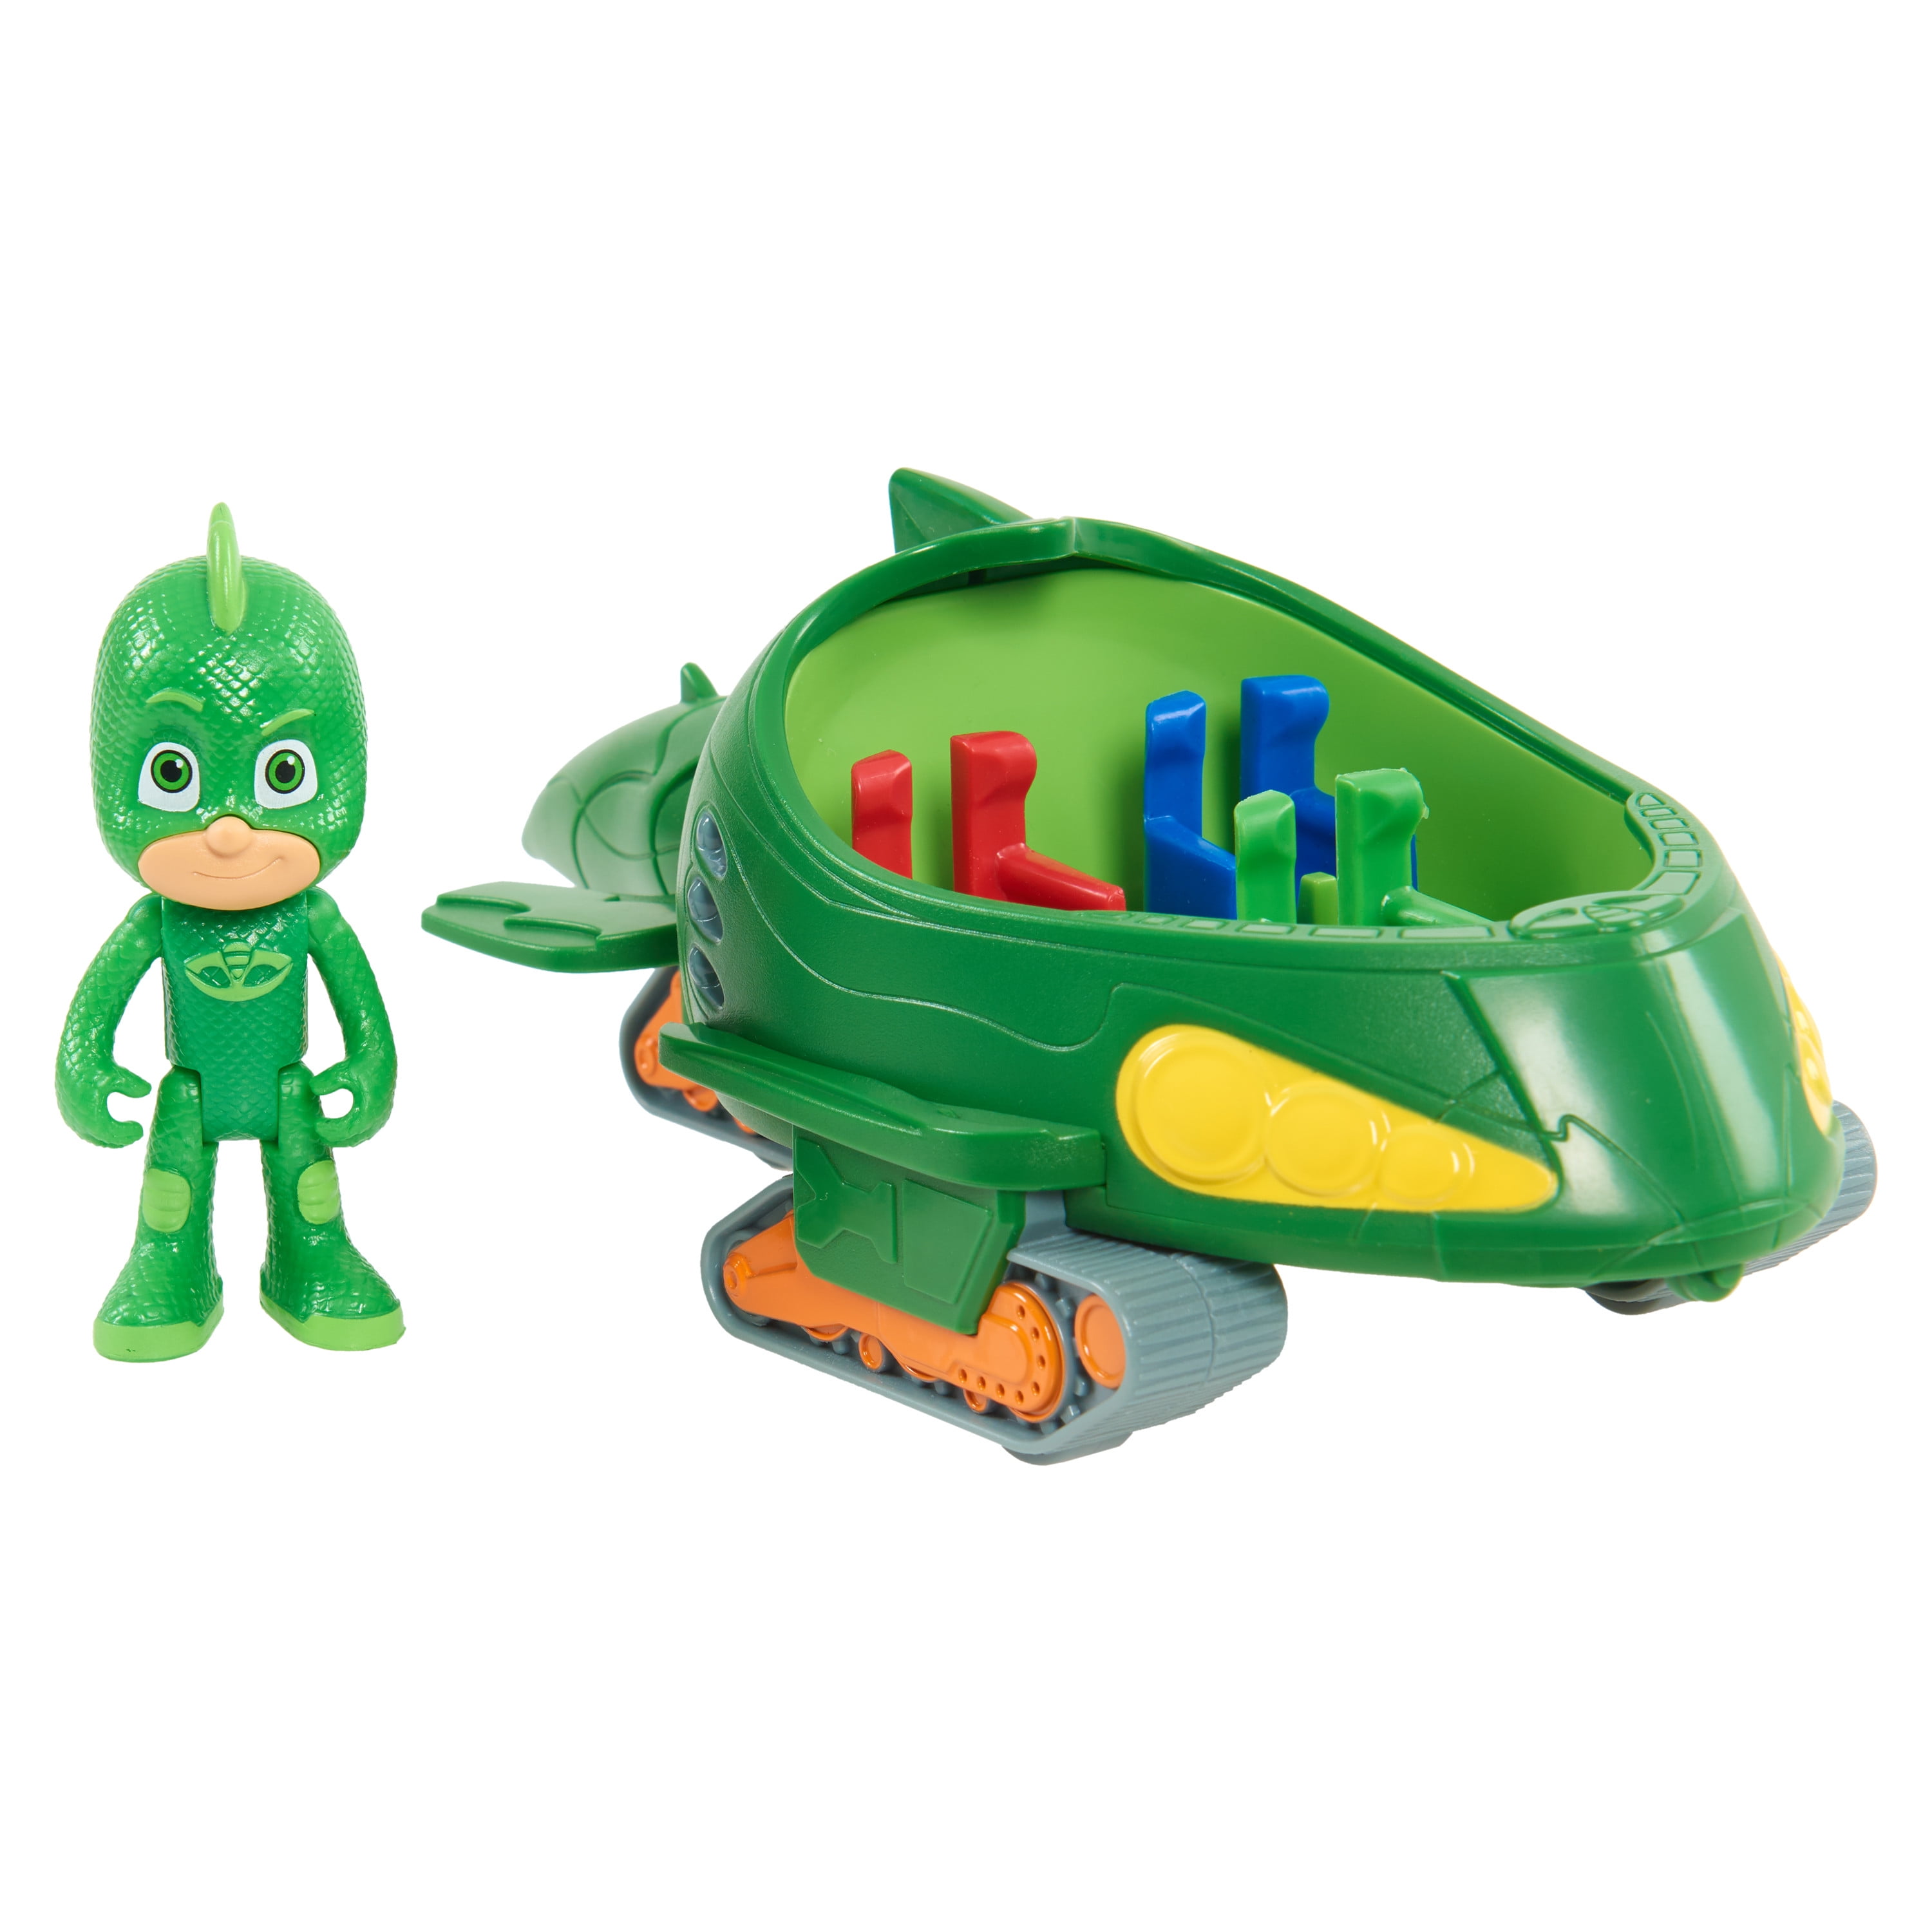 Il suffit de jouer au véhicule PJ Masks, à la figure Gekko Mobile & Gekko, aux jeux pour enfants pour les âges 3